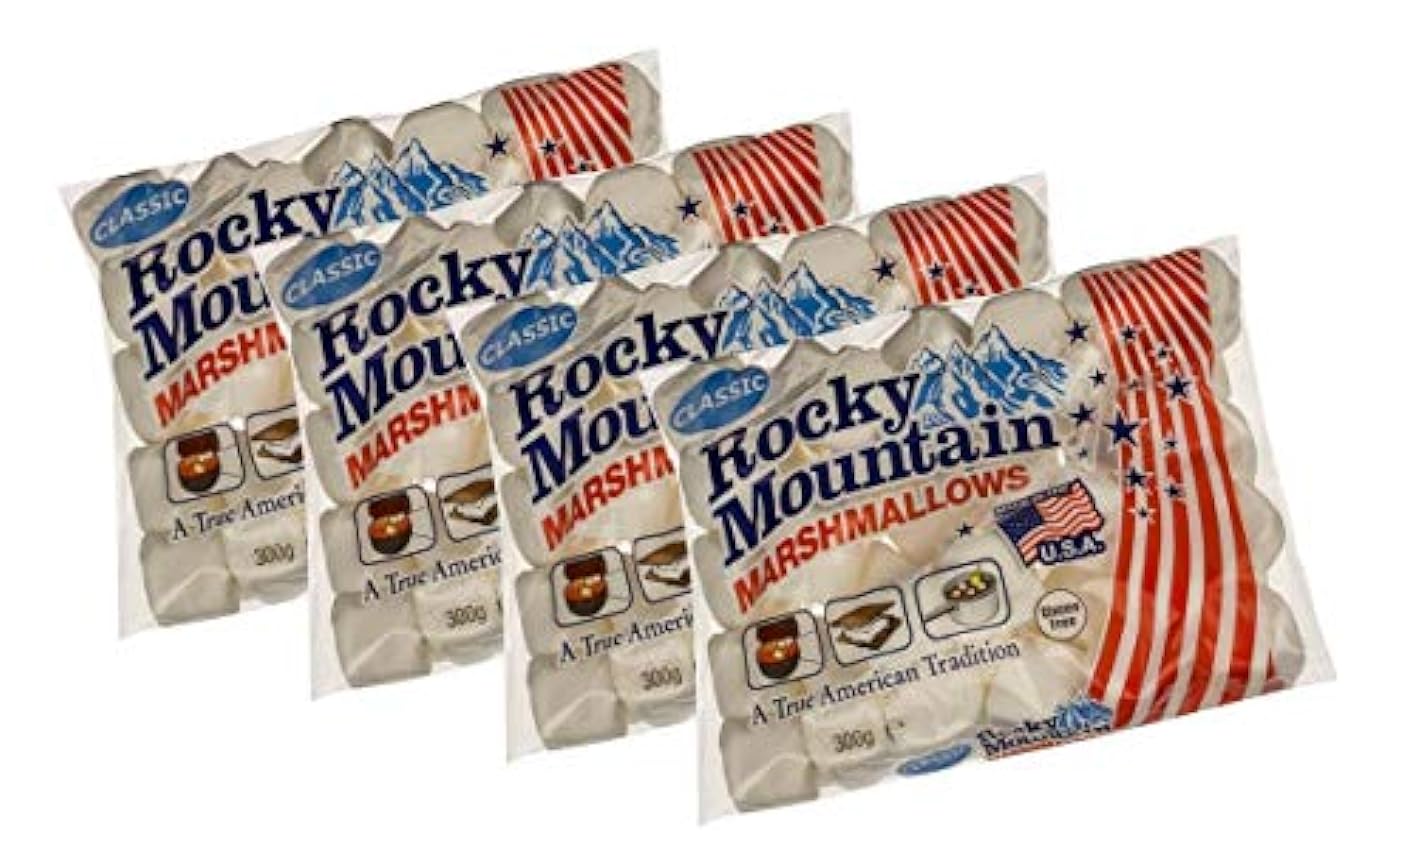 Rocky Mountain Marshmallows Classic 4x300g, dulces tradicionales americanos para asar en la hoguera, a la parrilla o al horno, 4x300g p8sw5Ckk